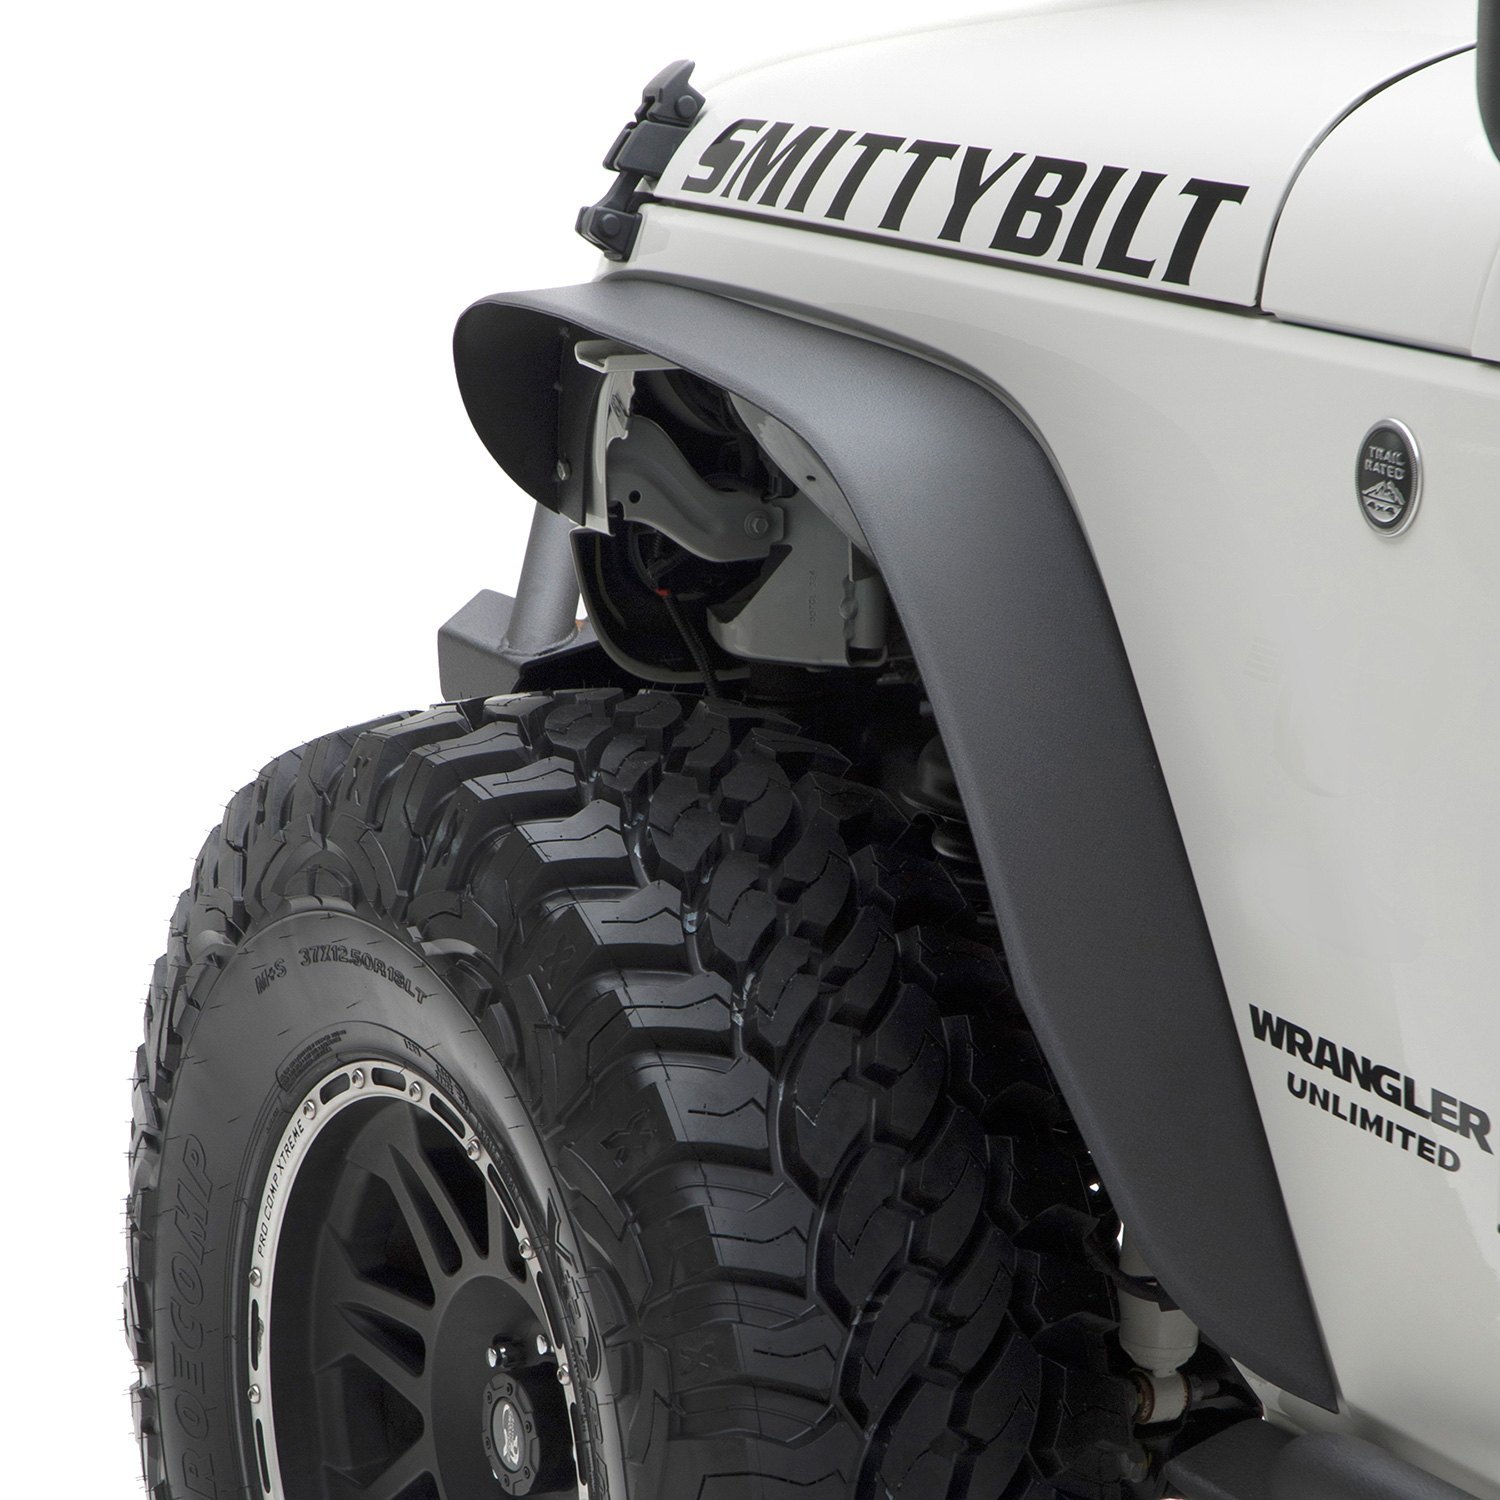 Smittybilt 76875 XRC Rear 3" Fender Flares Black Textured Jeep Accessories